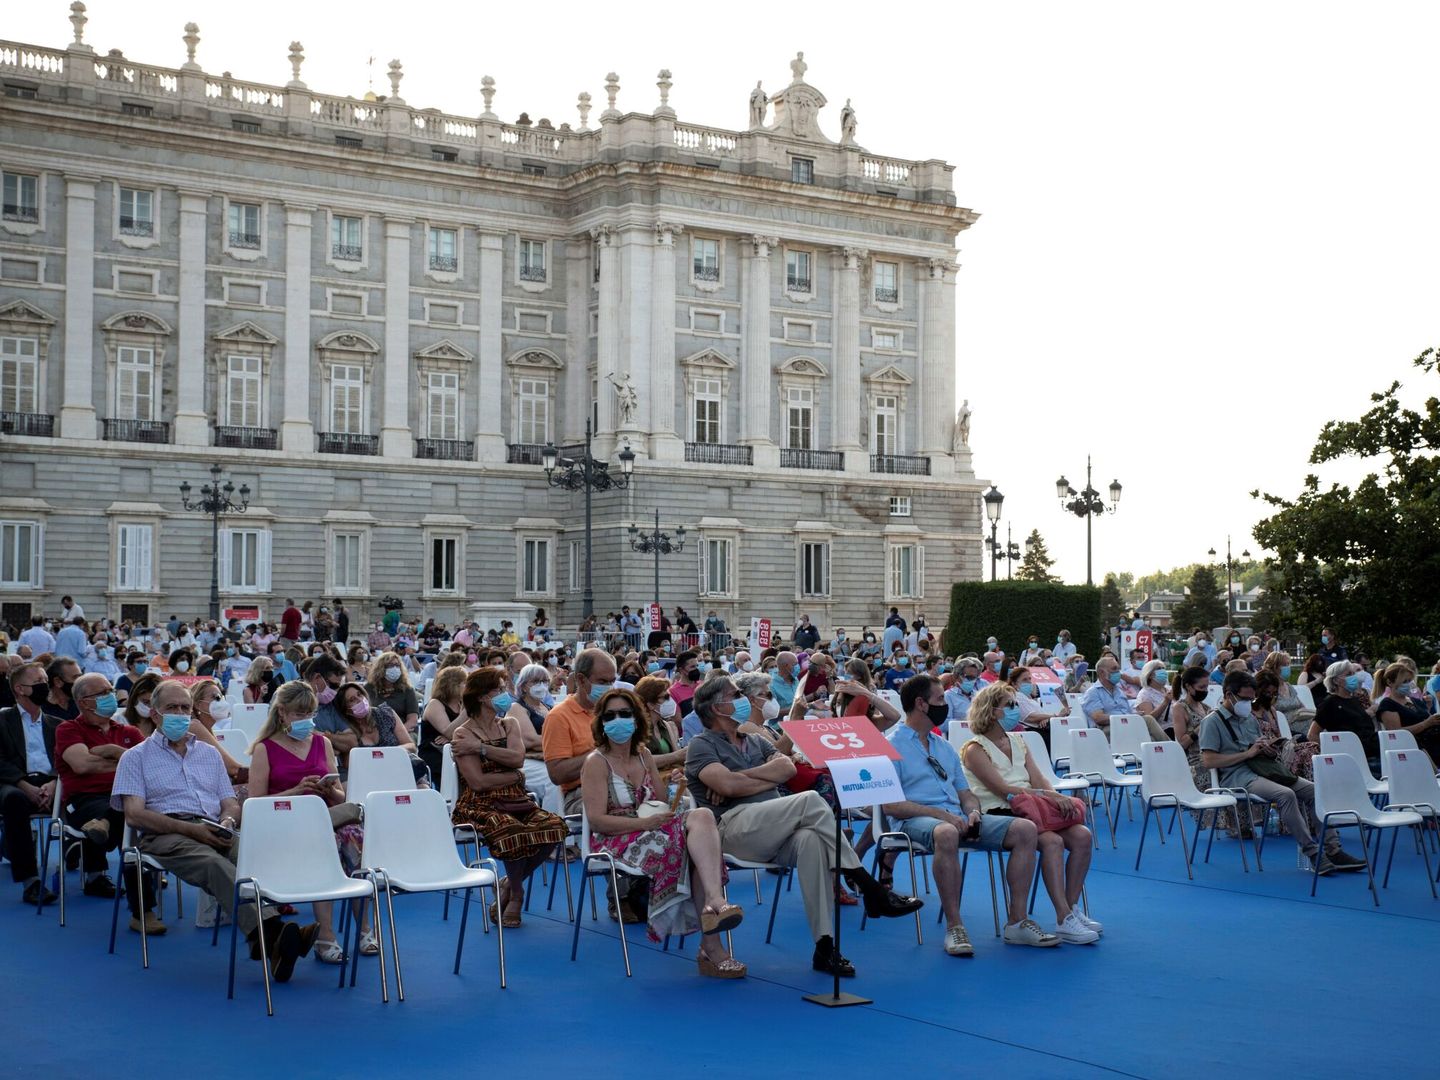 Ópera al aire libre en la Plaza de Oriente. (EFE/ Luca Piergiovanni)